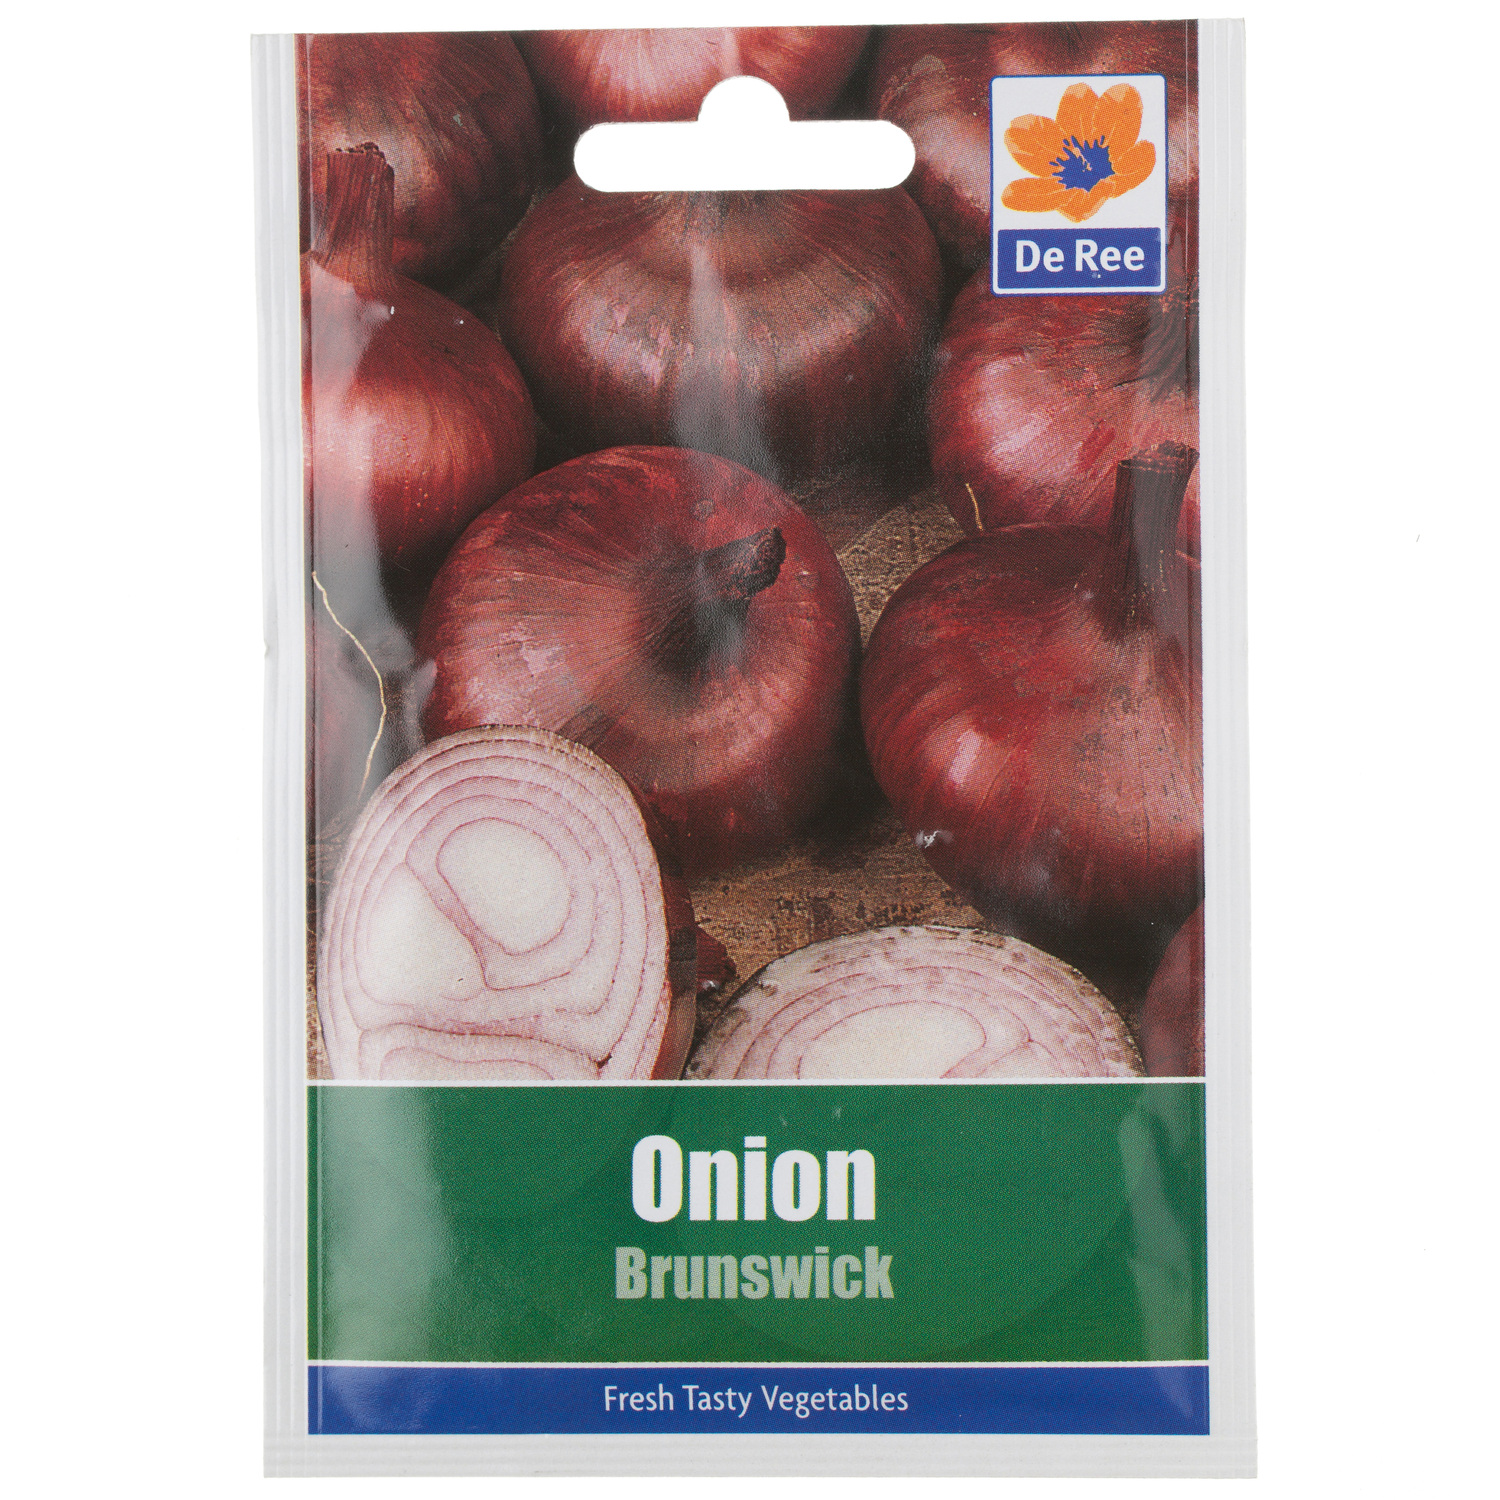 Onion Brunswick Seed Packet Image